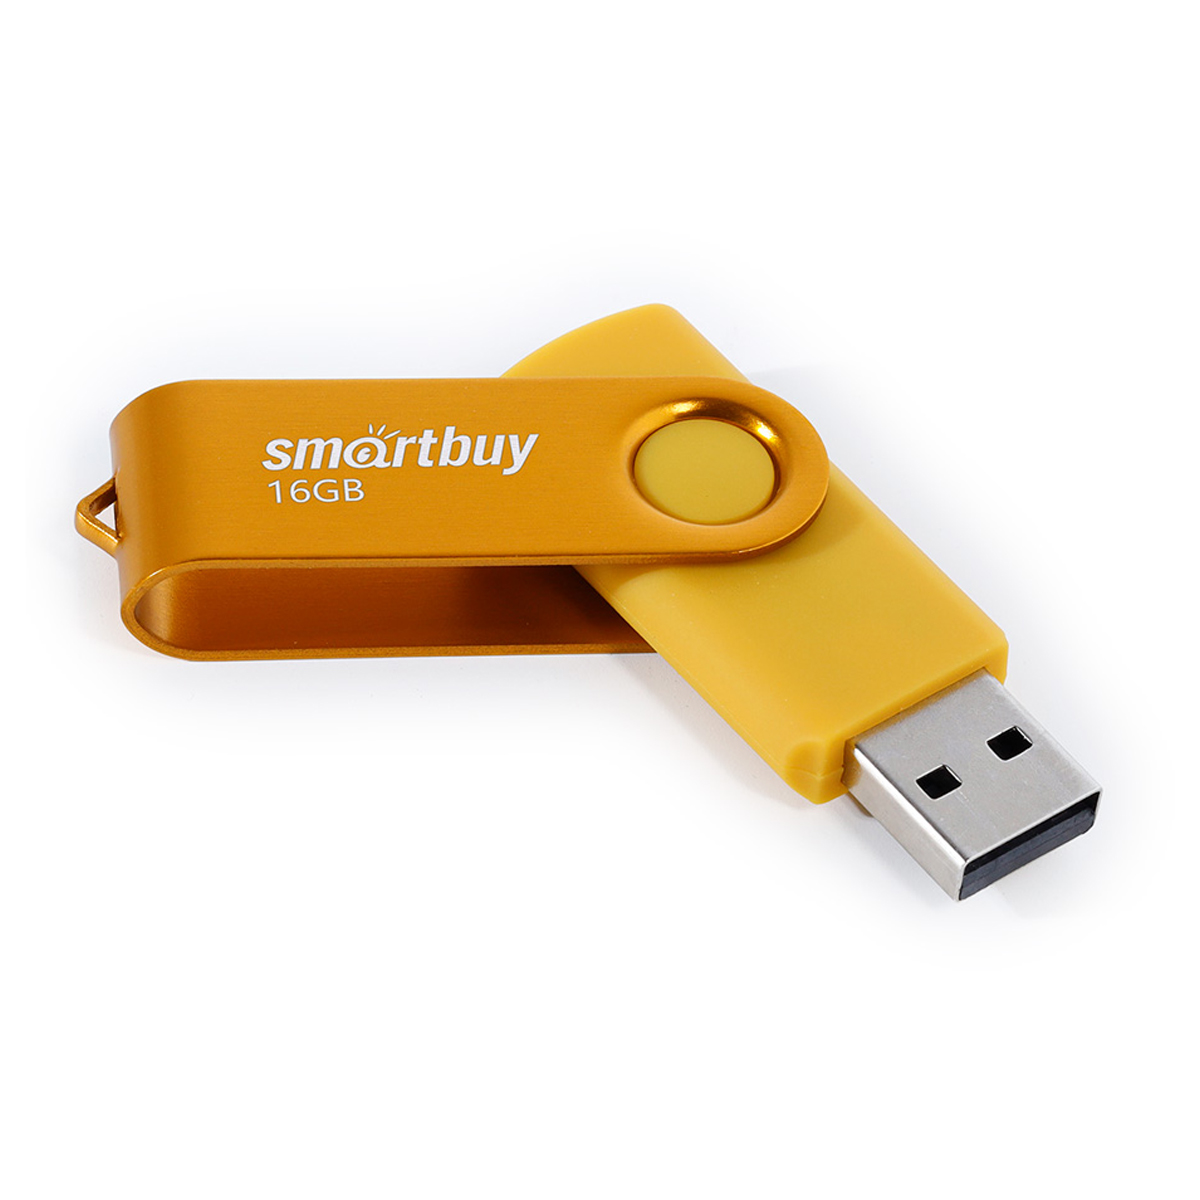  Smart Buy "Twist" 16GB, USB 2.0 Flash Drive, 